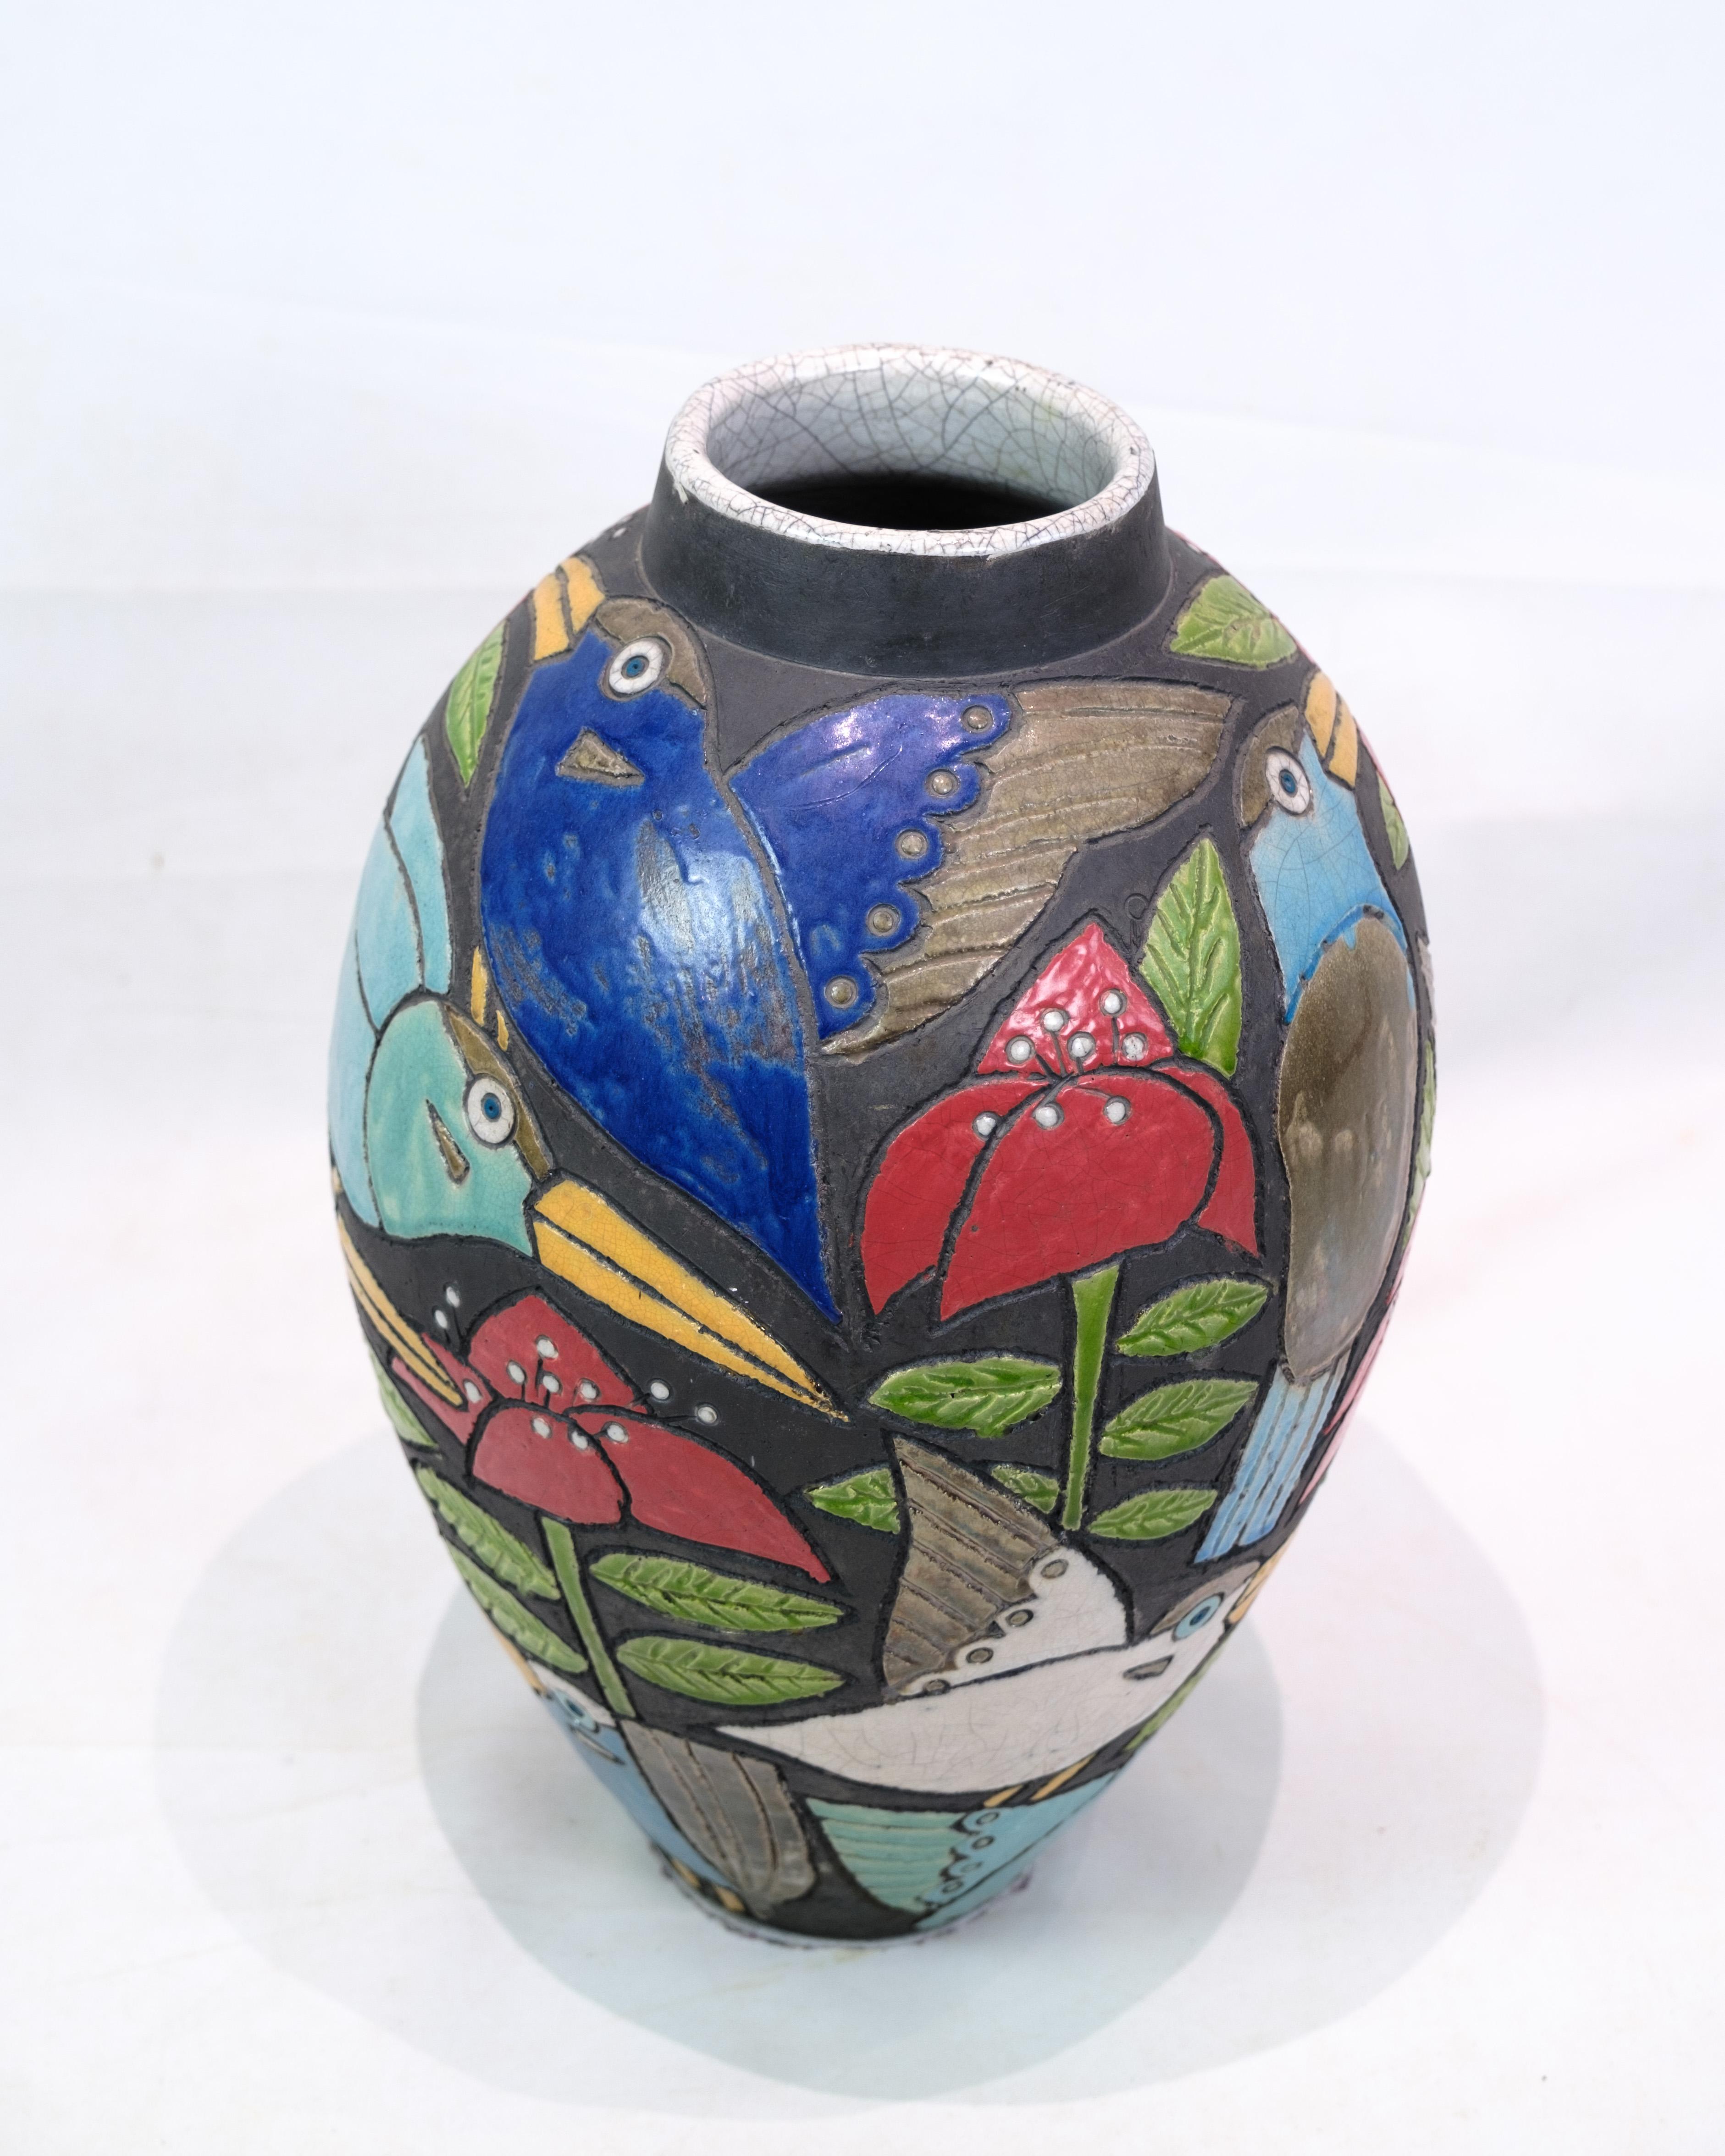 Diese große Bodenvase aus Keramik ist ein wunderschönes, verziertes Objekt, verziert mit Motiven von Vögeln und Blumen in bunten Farbtönen. Die von Dorte Friis entworfene Vase zieht mit ihren lebhaften und lebendigen Details sofort die